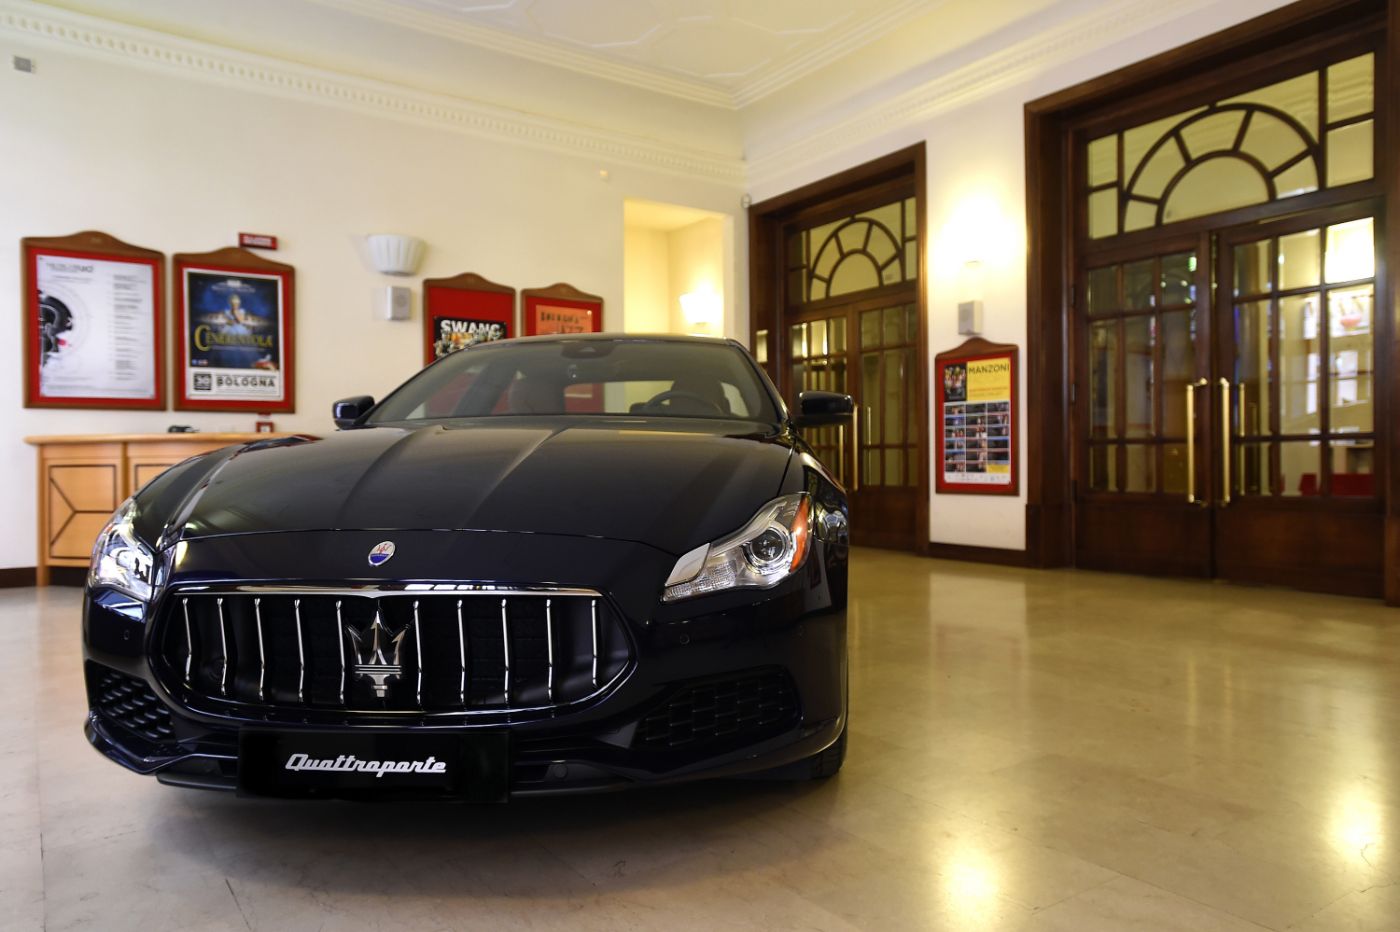 Maserati Quattroporte inaugura la stagione al teatro Manzoni di Bologna